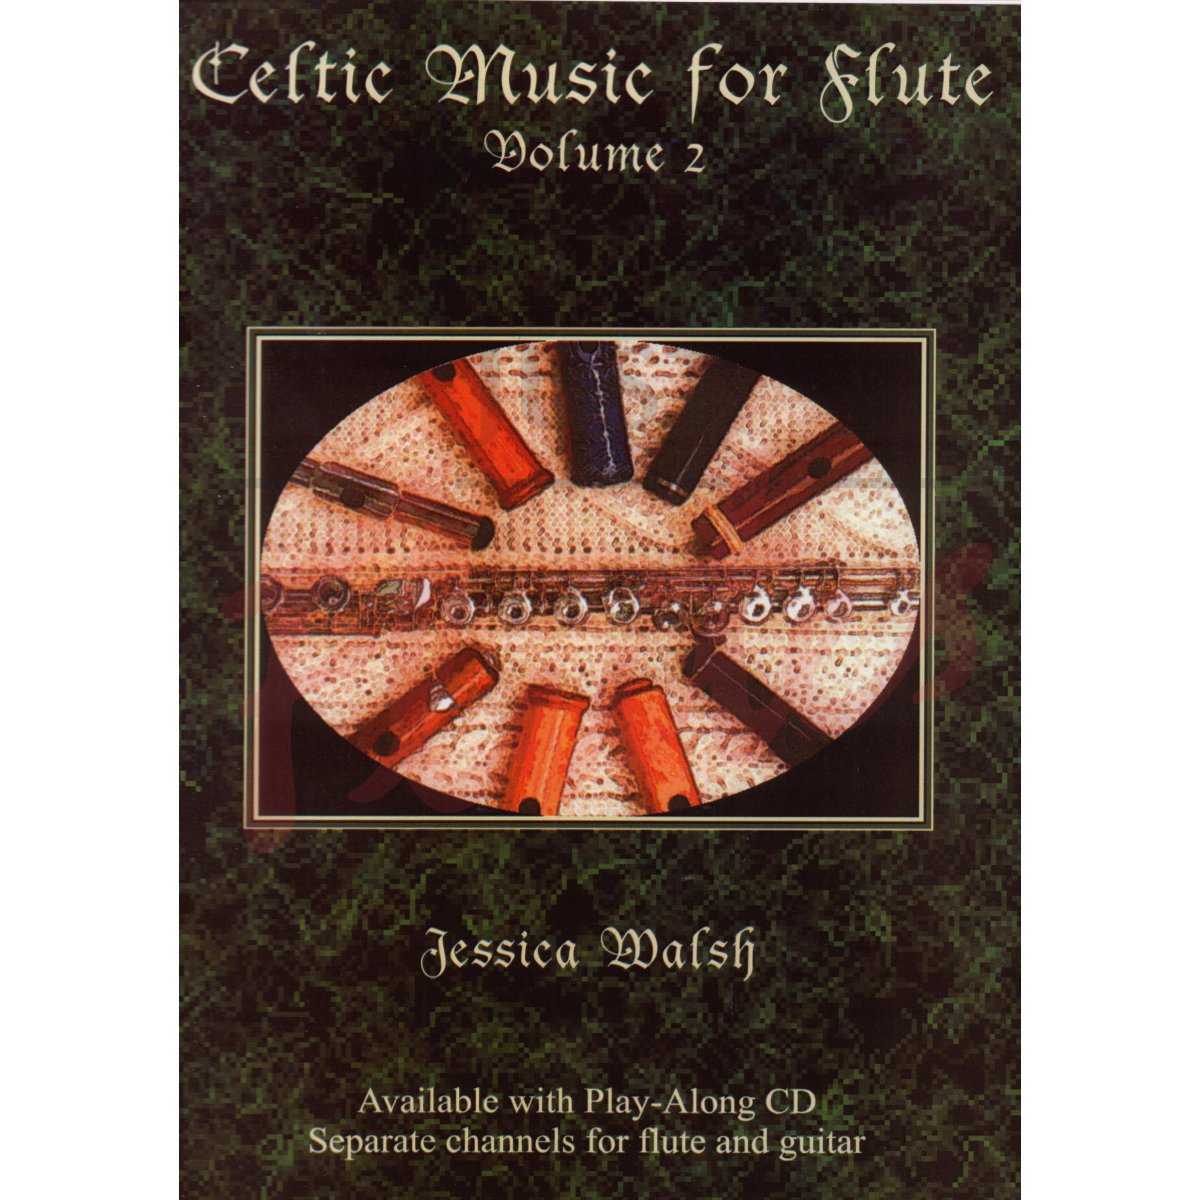 Celtic Music for Flute, Vol 2